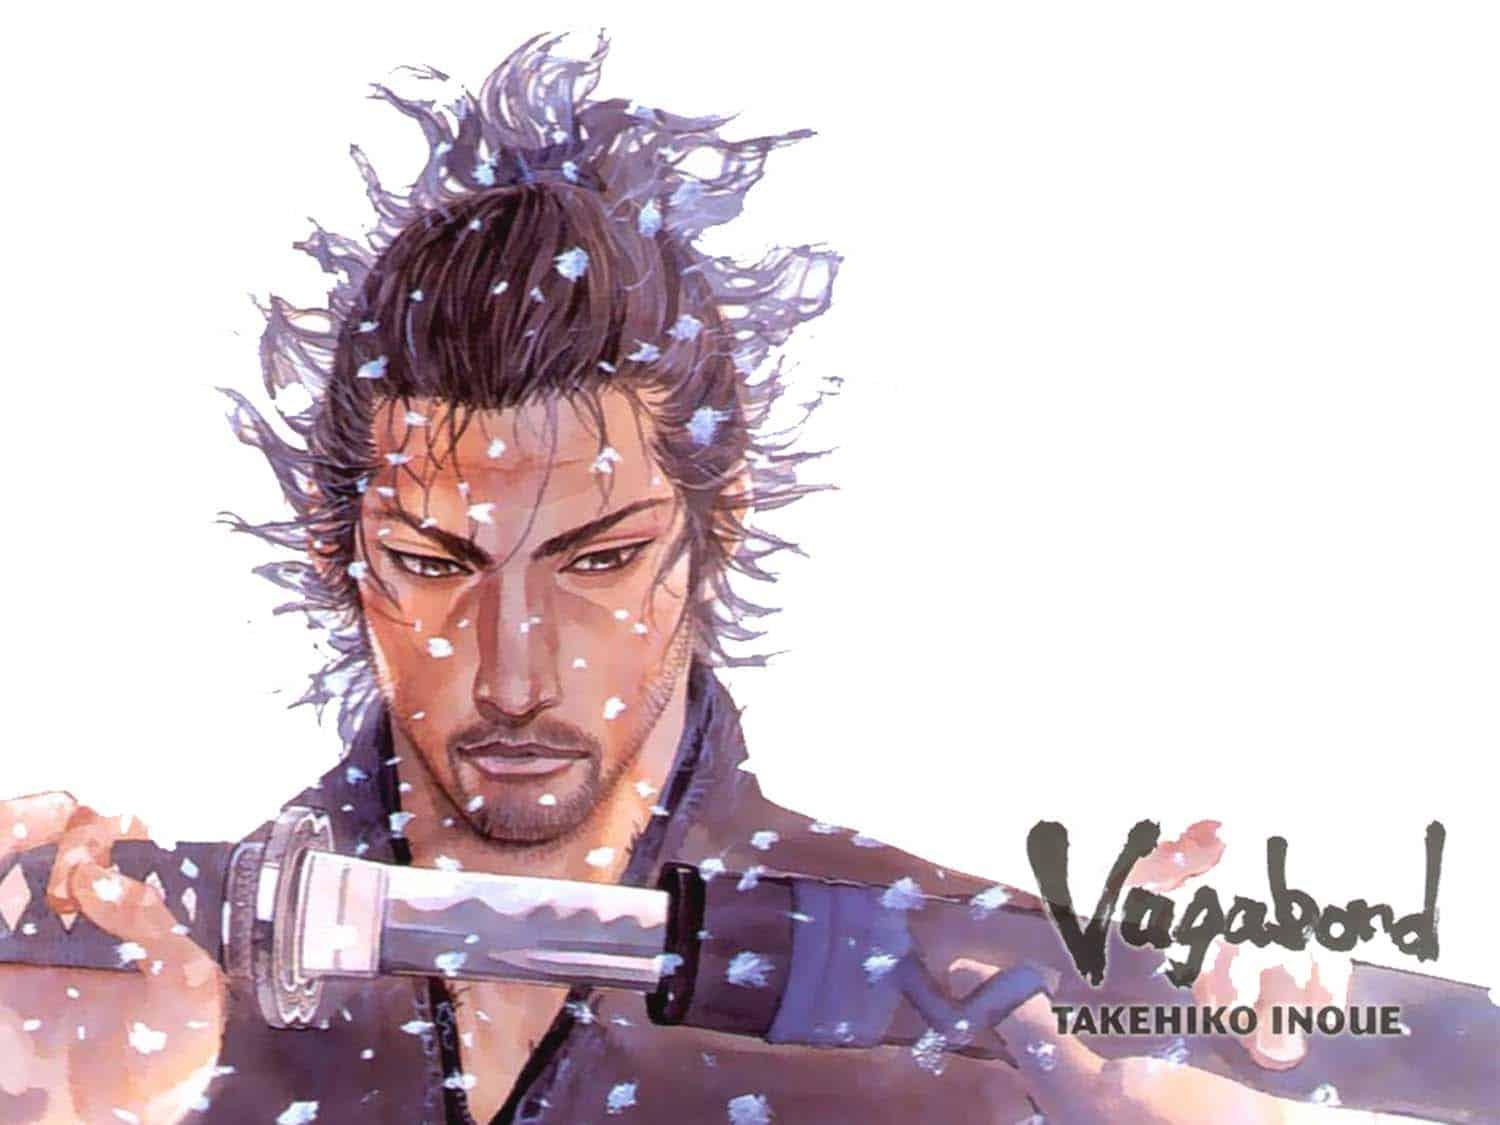 Ilustração de Takehiko Inoue: Shinmen Takezo na capa do mangá Vagabond, em que o jovem irá se tornar o famoso Myamoto Musashi